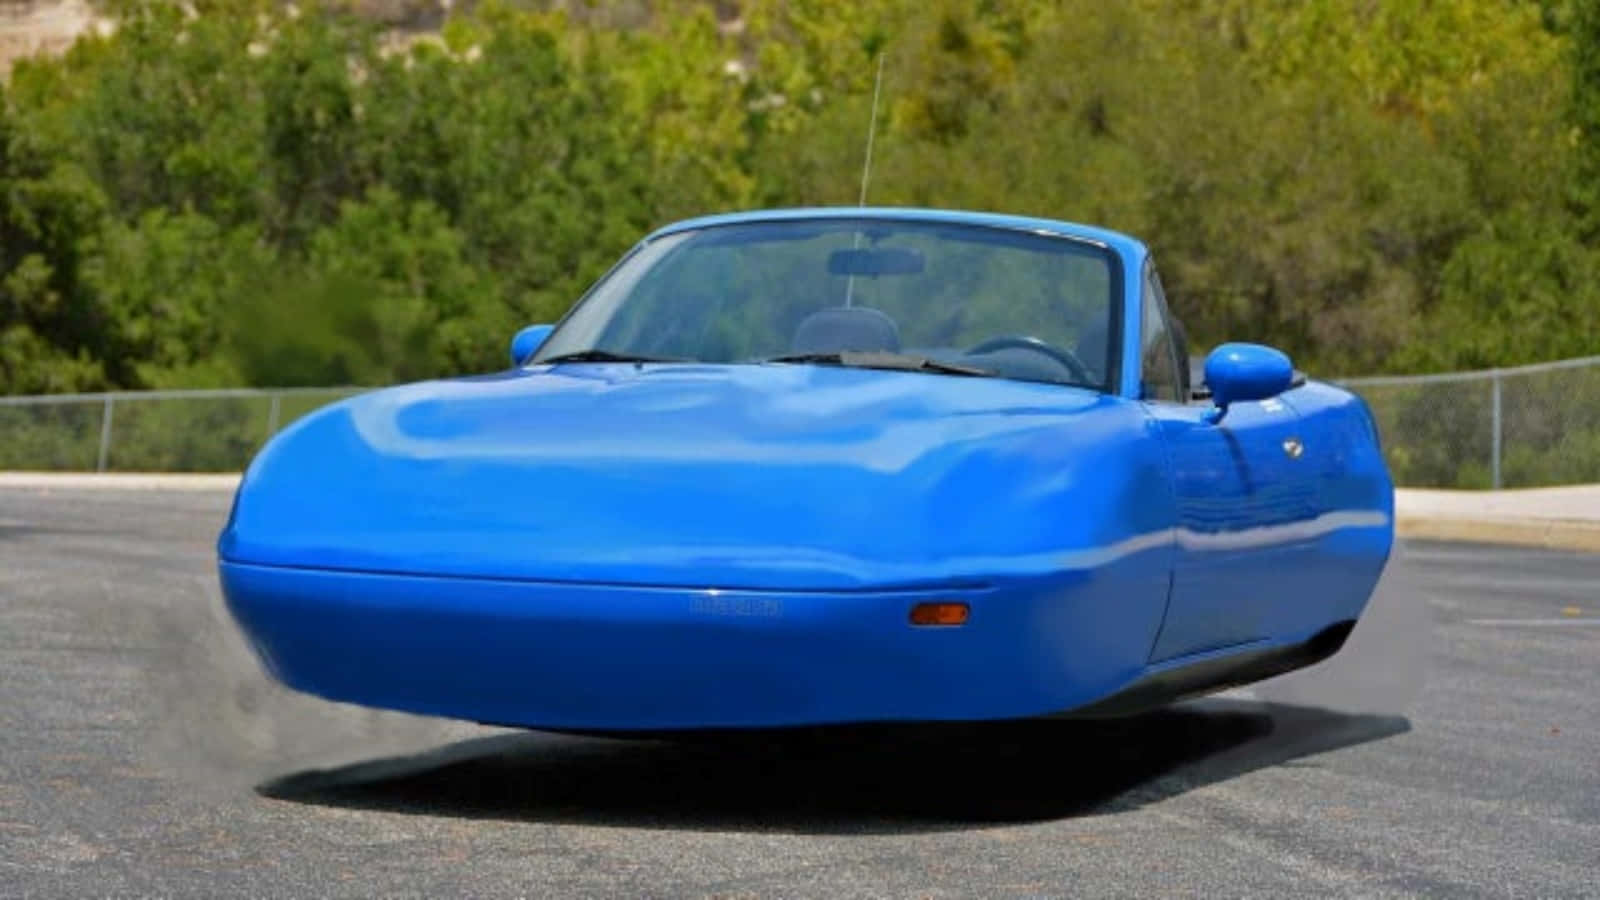 En blå bil med en motor på den.